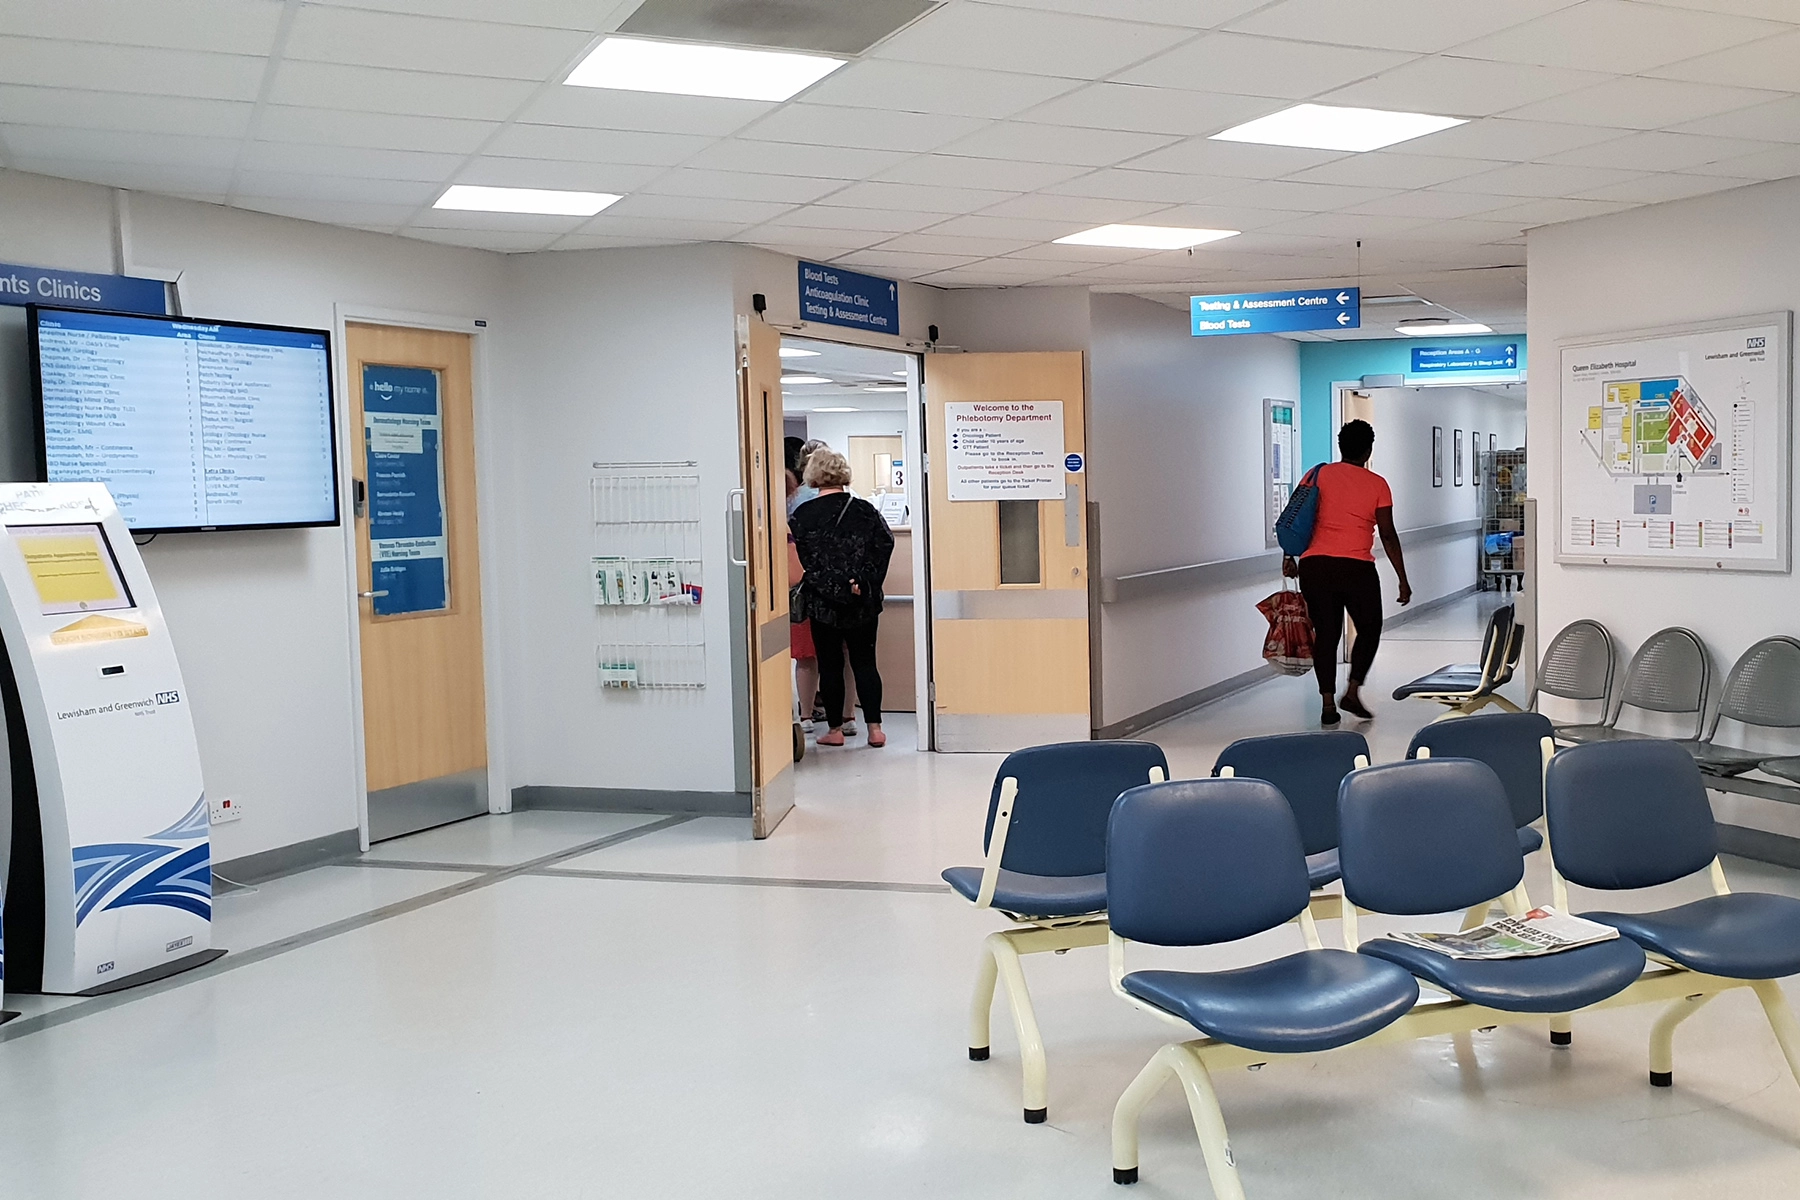 Βρετανία: Σκηνές χάους στα νοσοκομεία – Ασθενείς περιμένουν έως και 13 ώρες για να δουν γιατρό